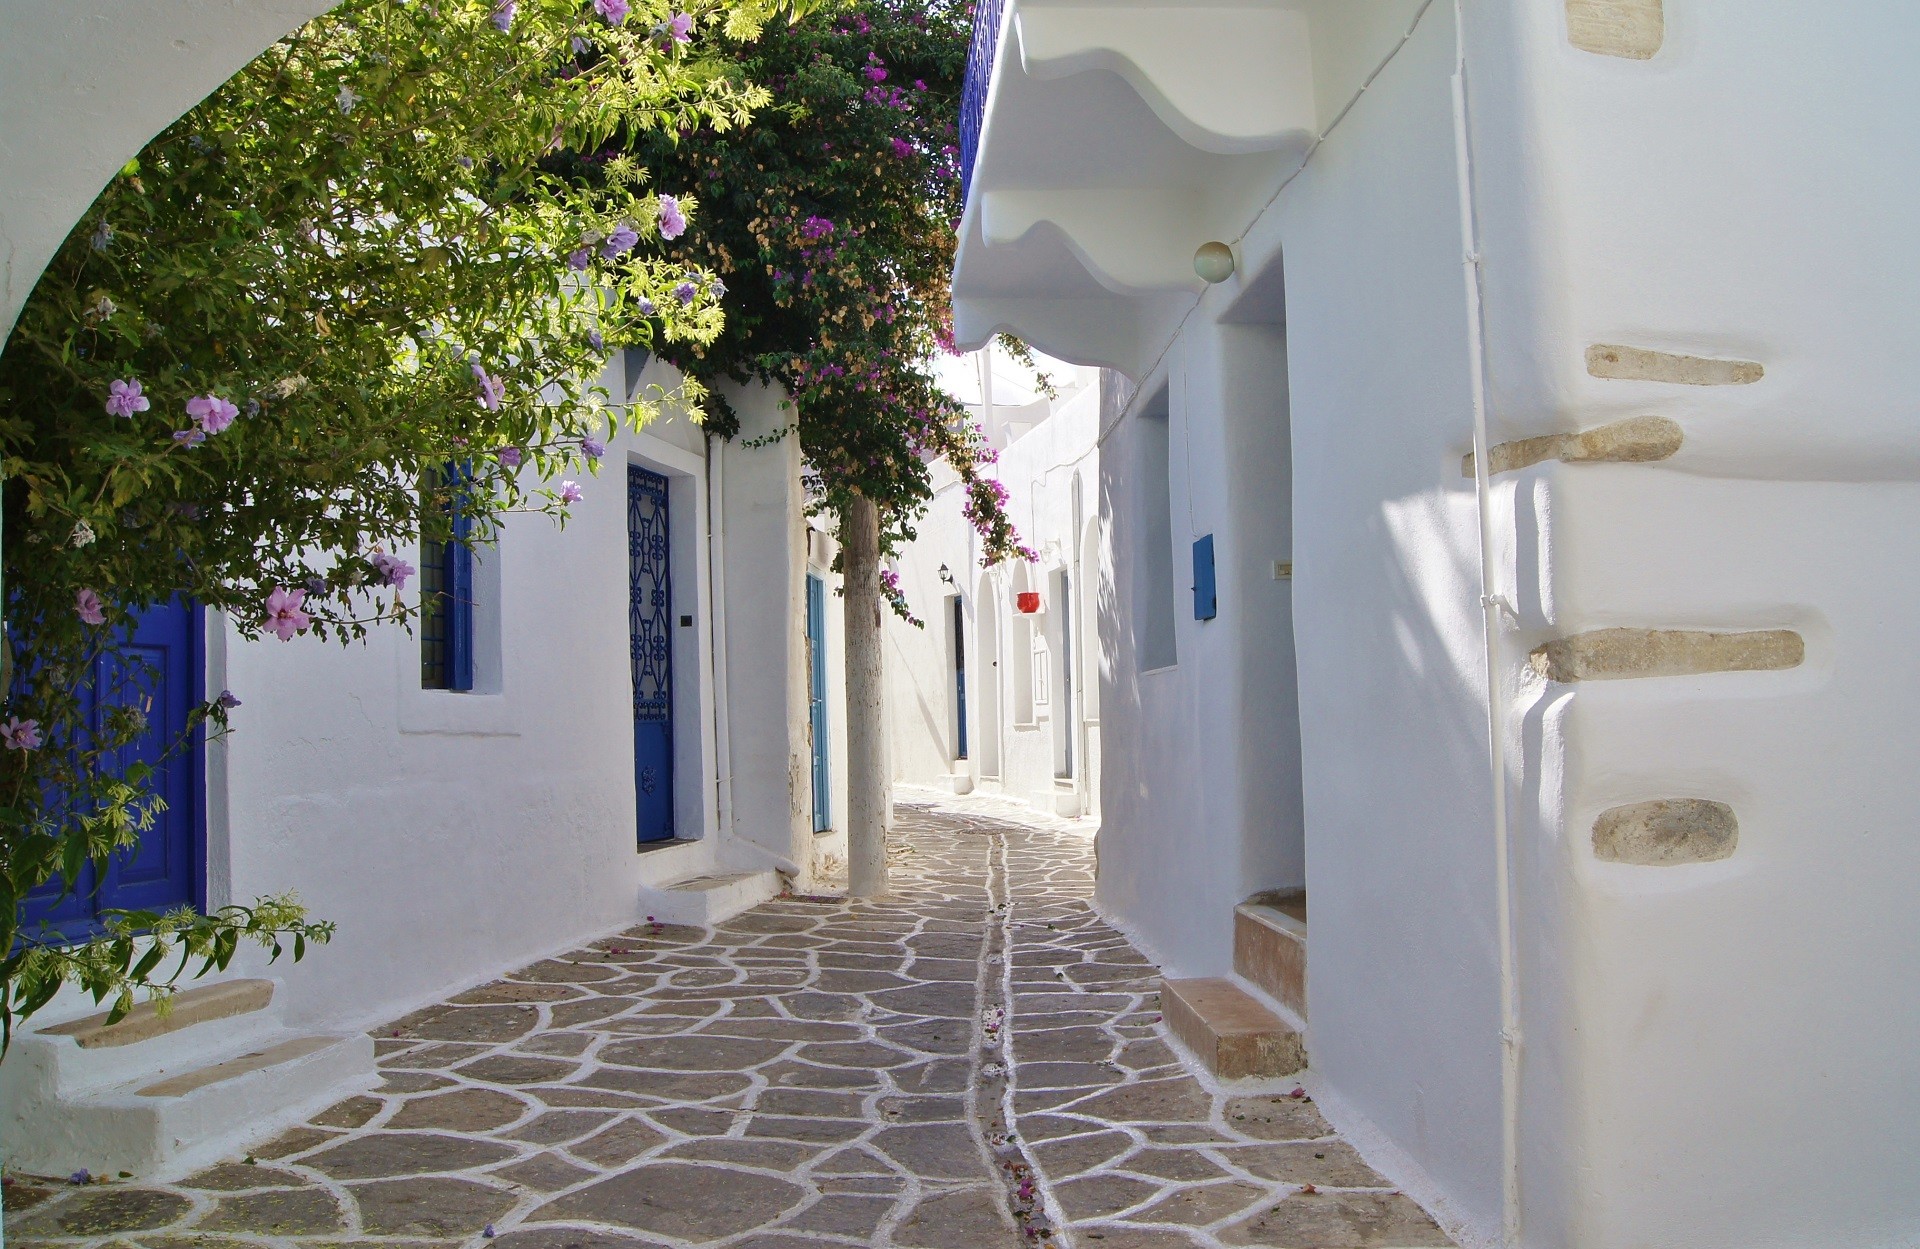 uliczka z bielonymi domkami w tradycyjnym cykladzkim stylu po części osłonięta roślinnością